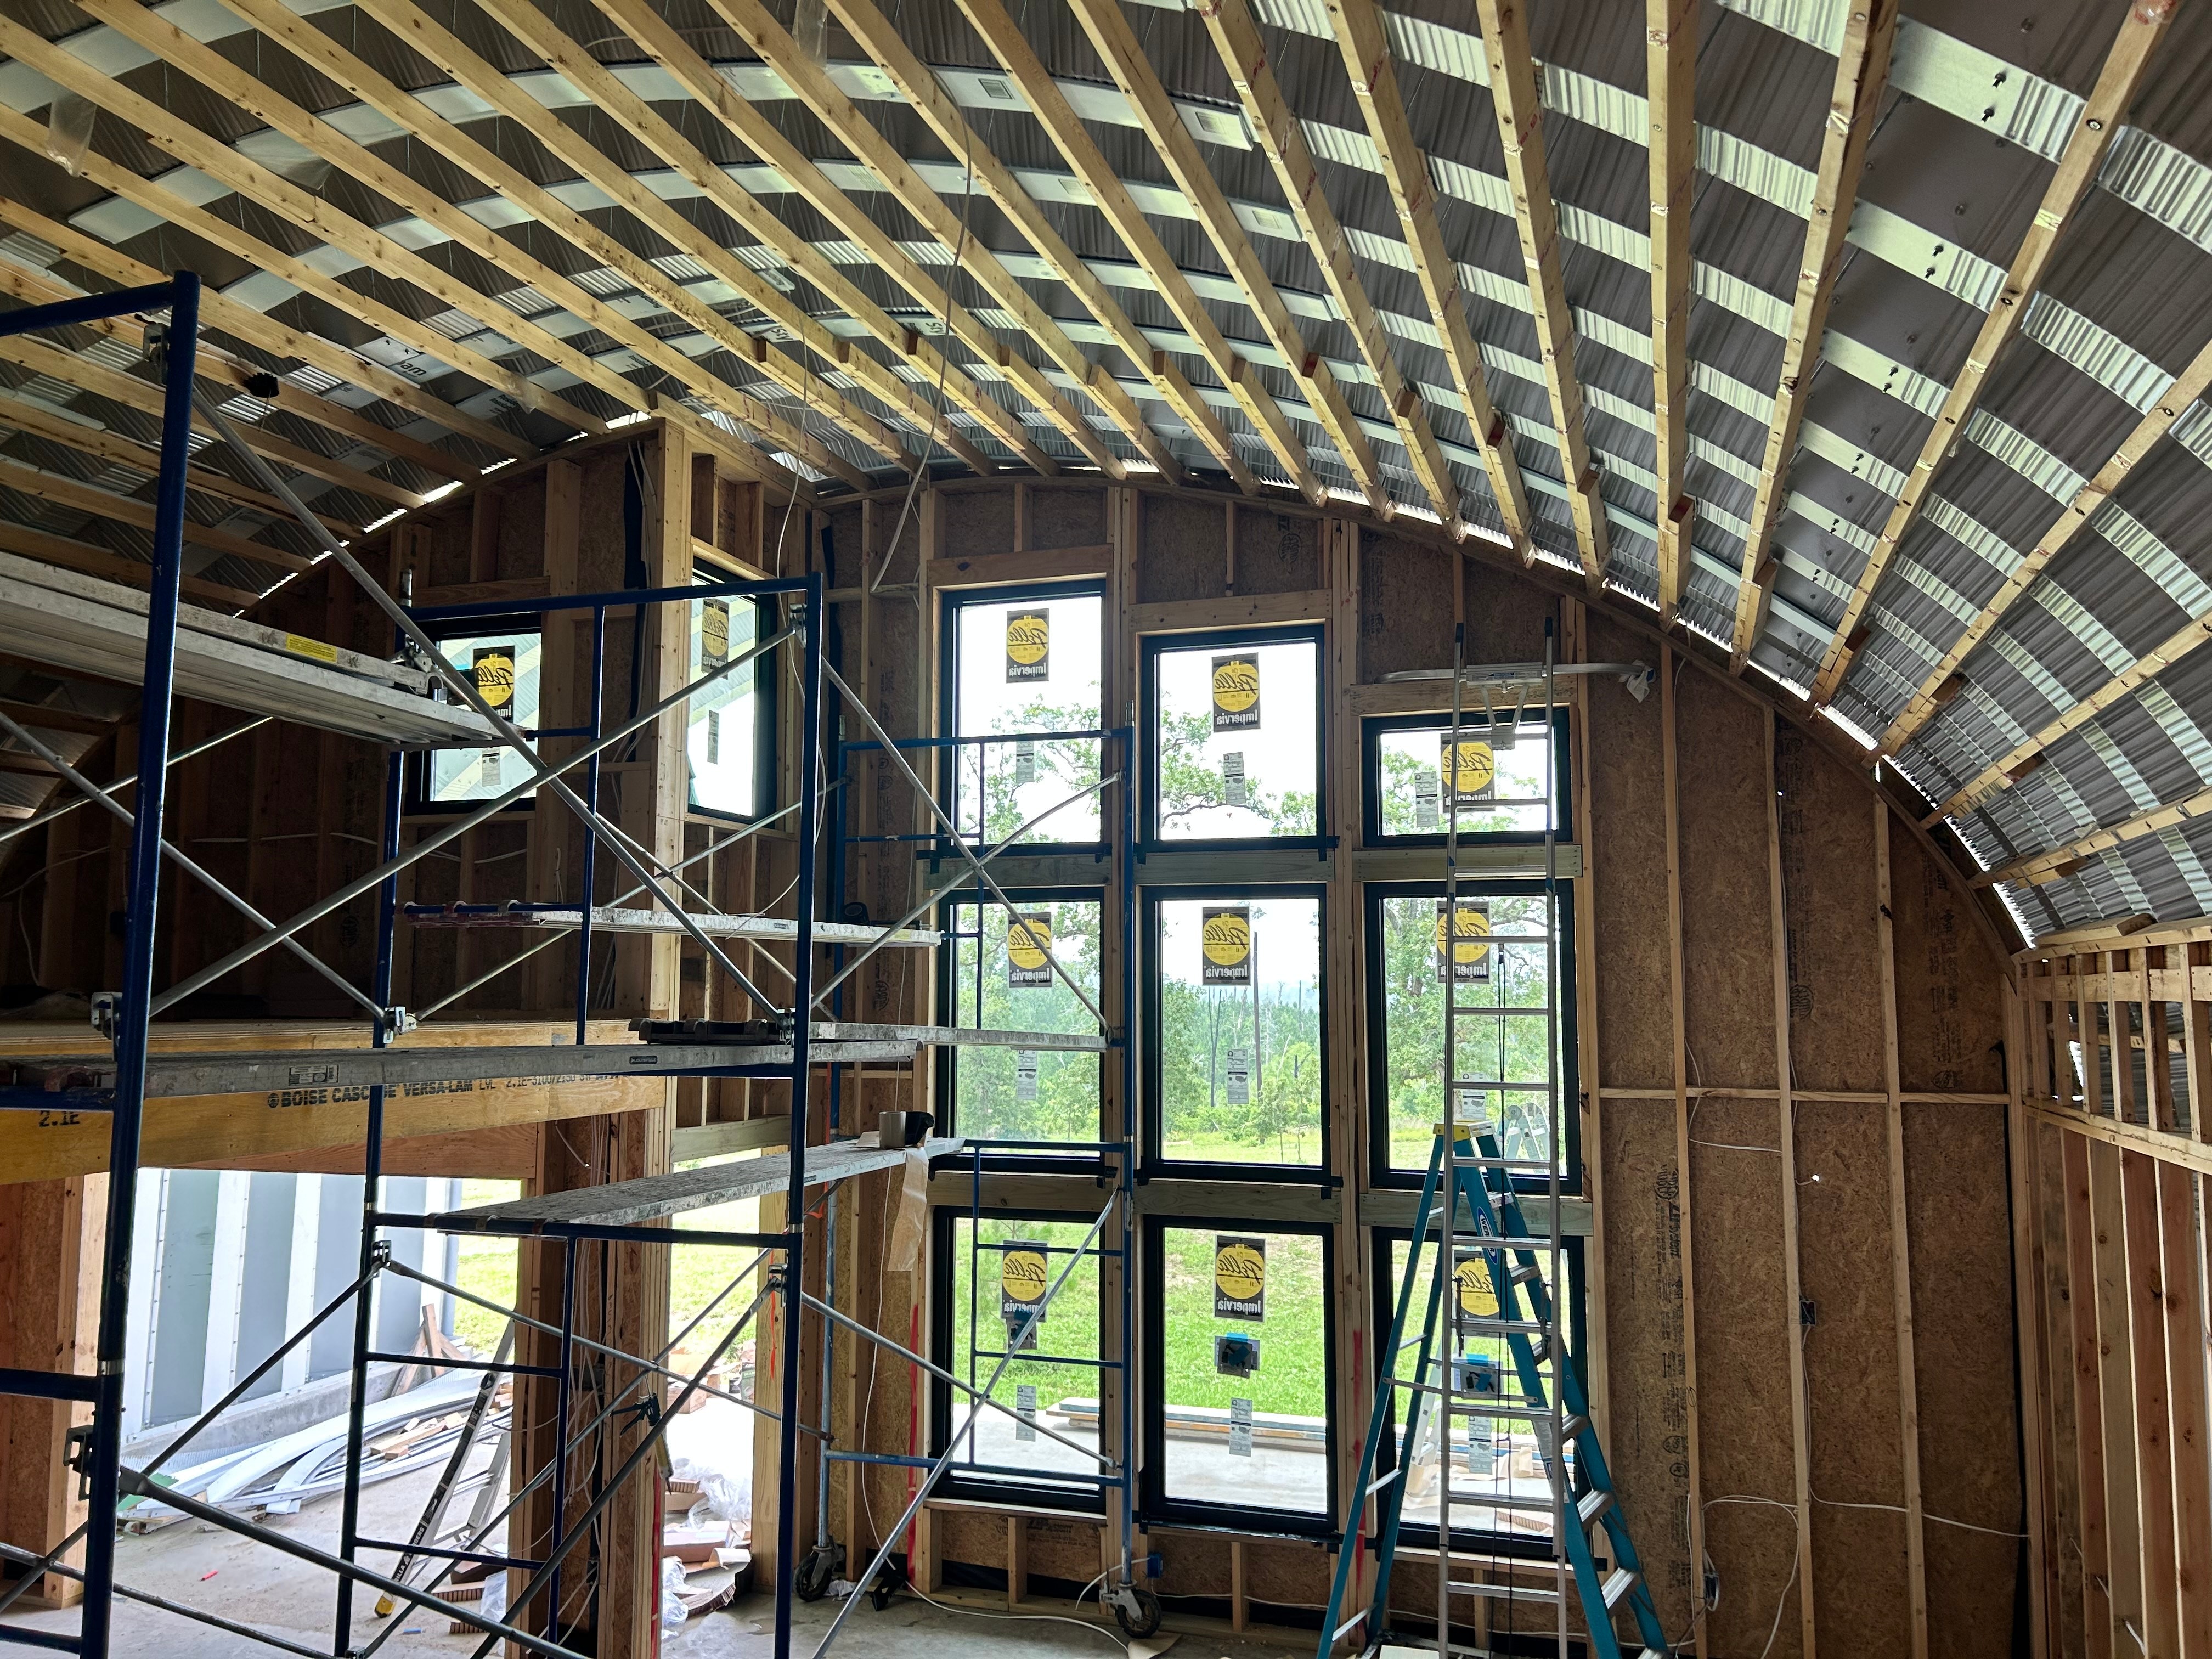 New construction adds fiberglass casement windows